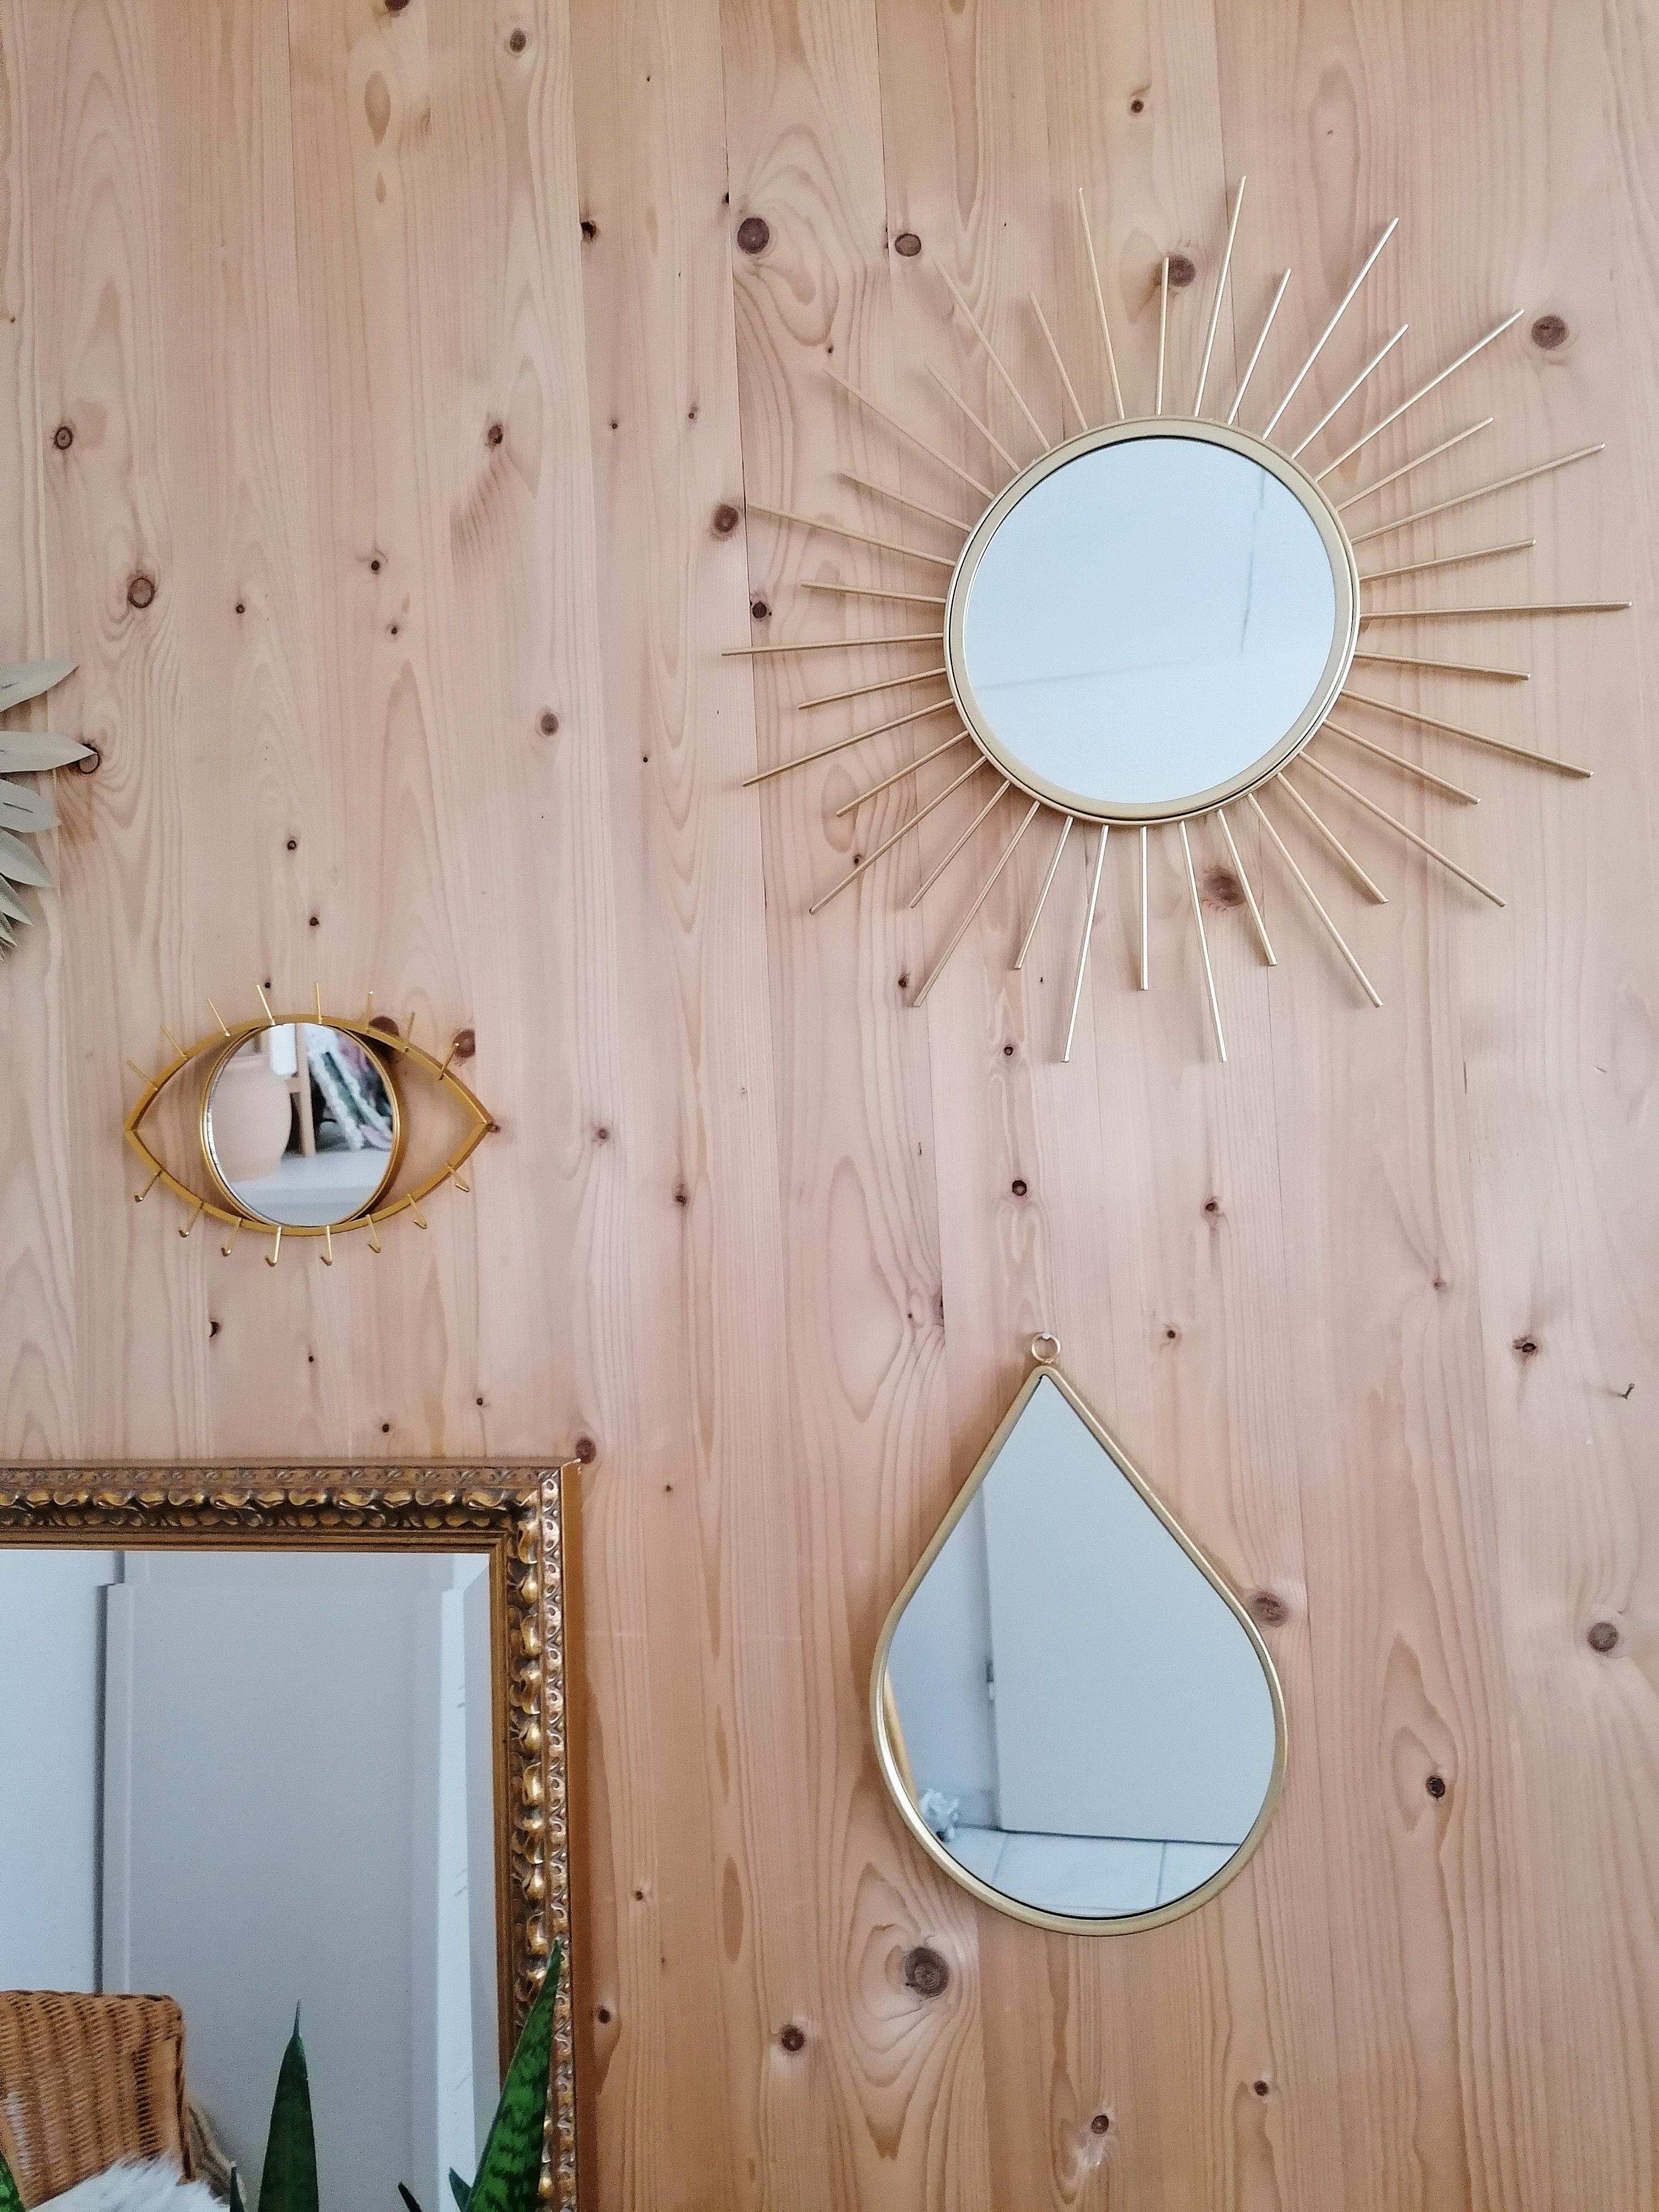 Spiegel in allen Formen ist ein Muss 😍 #mirror #stilbruch #couchmagazin 